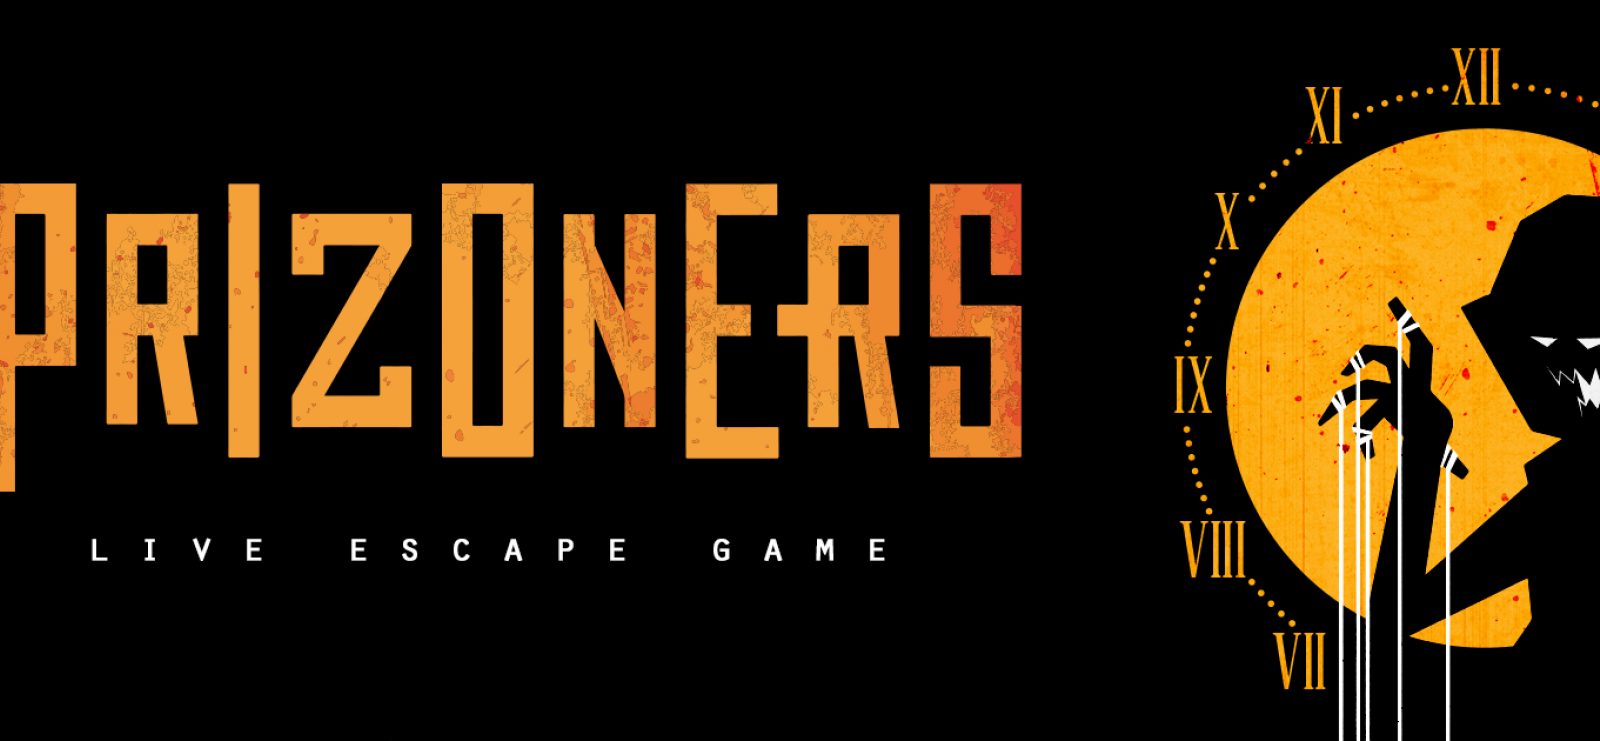 Prizoners - Escape Game